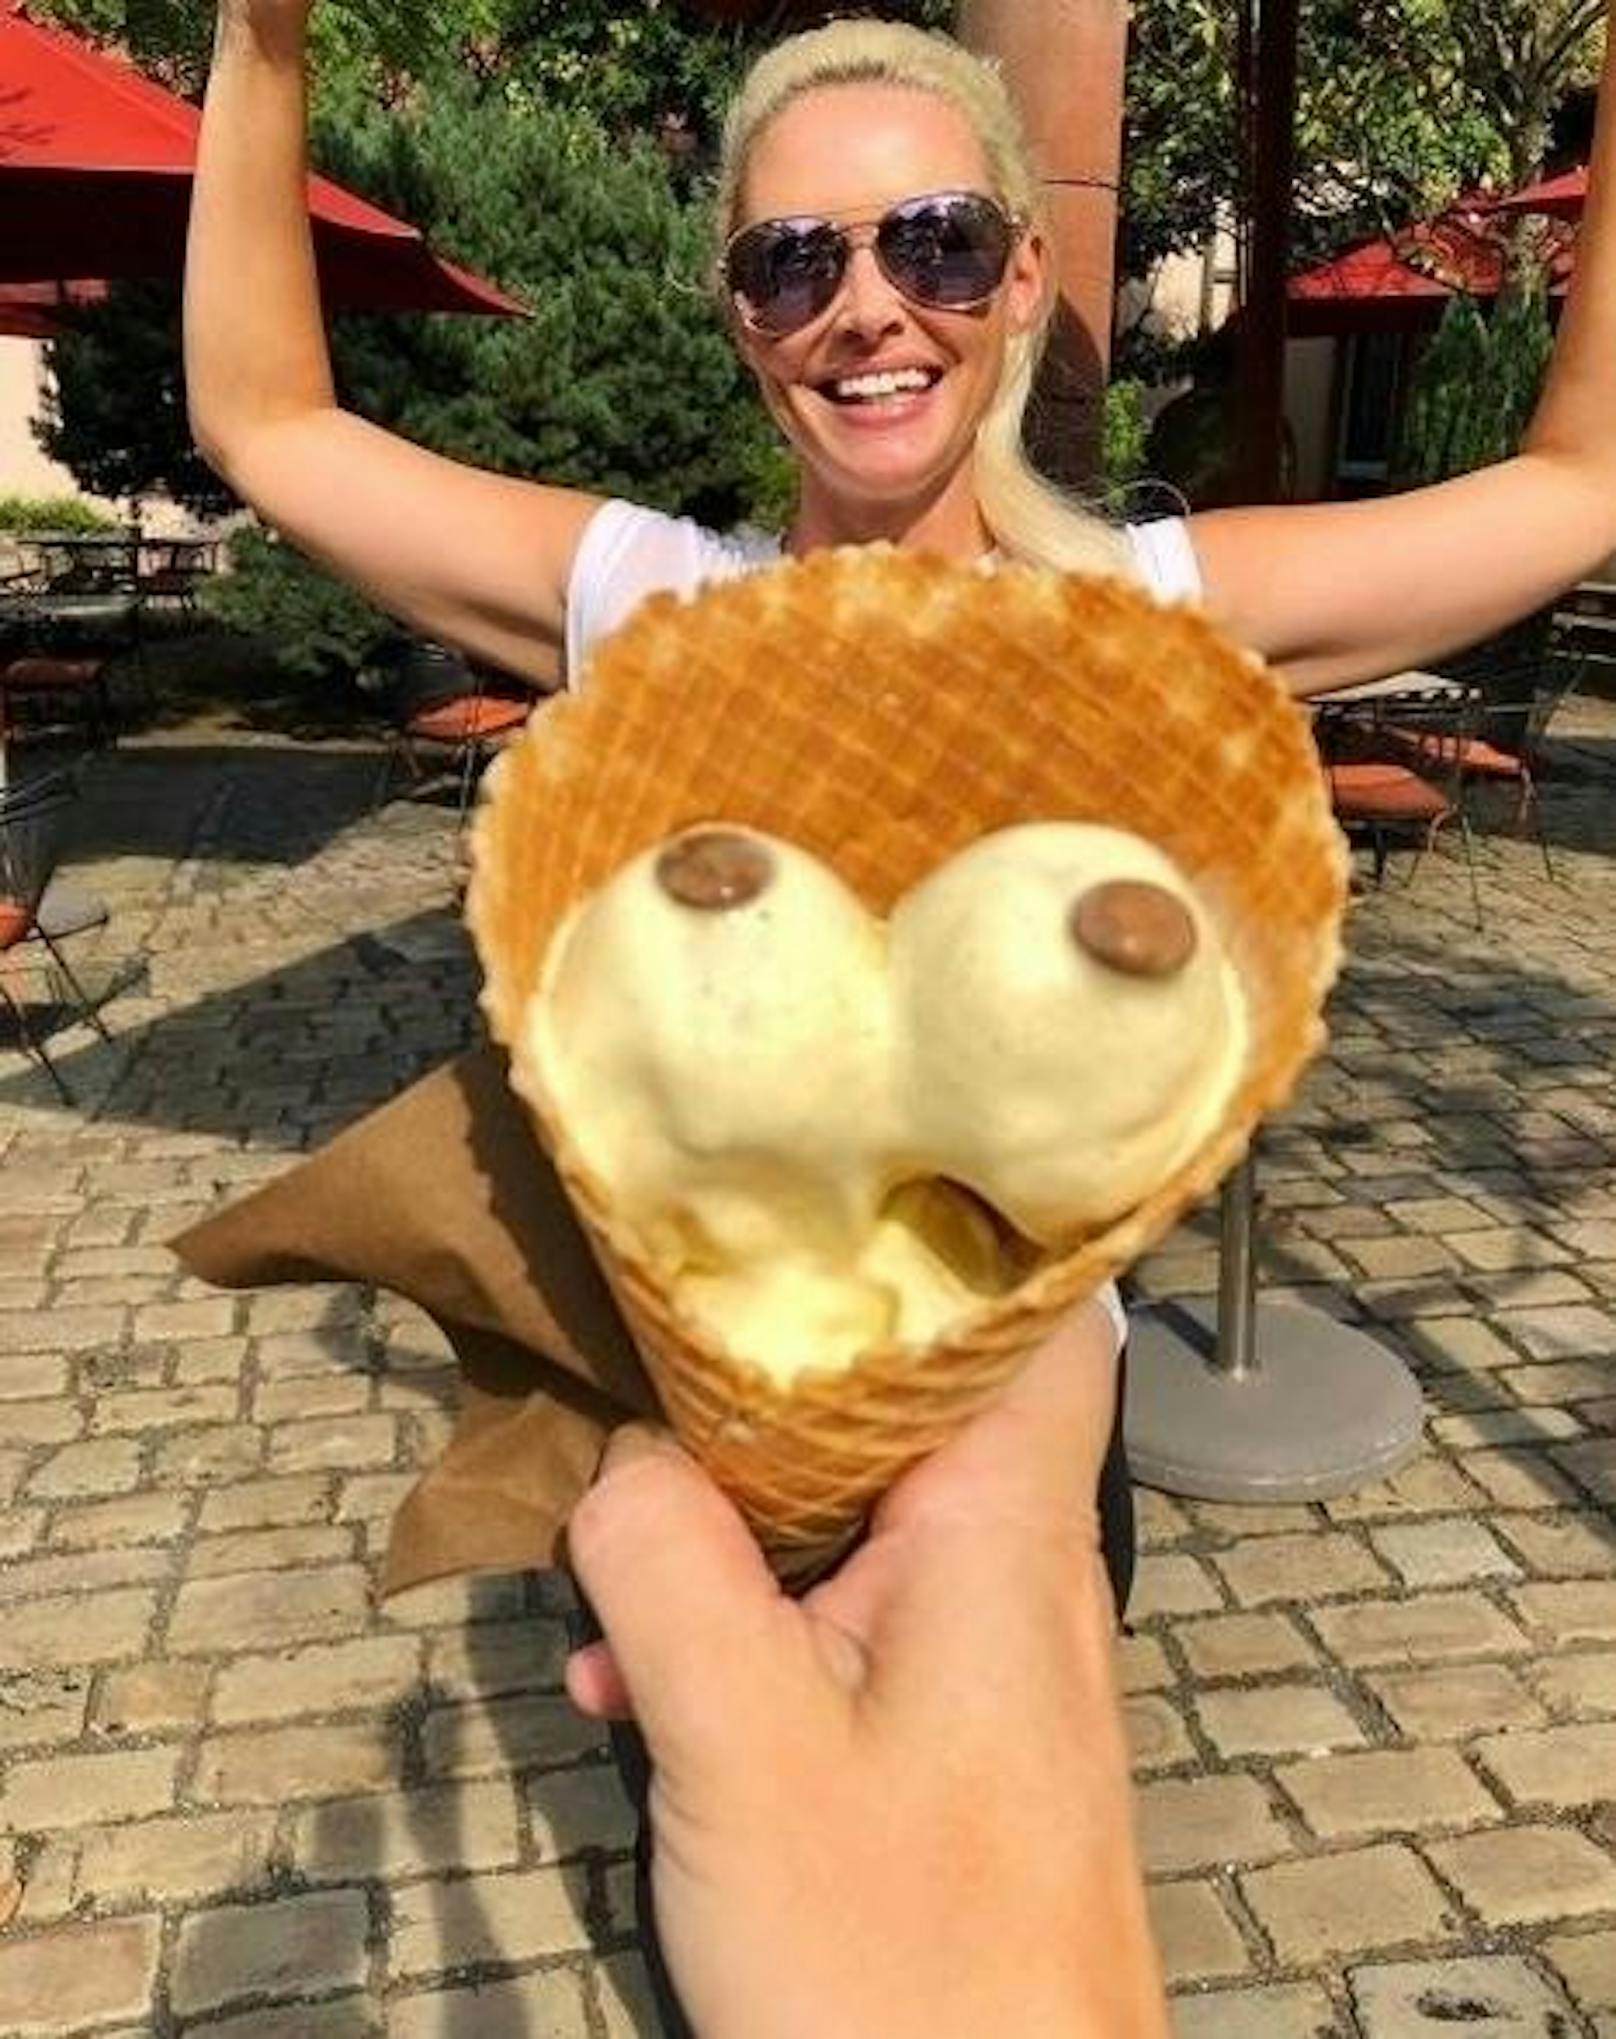 28.07.2019: Daniela Katzenberger hat nicht nur einen sondern zwei an der Waffel. Mit Fotos wie diesem weiß sie ihre Fans auf Instagram zu begeistern.